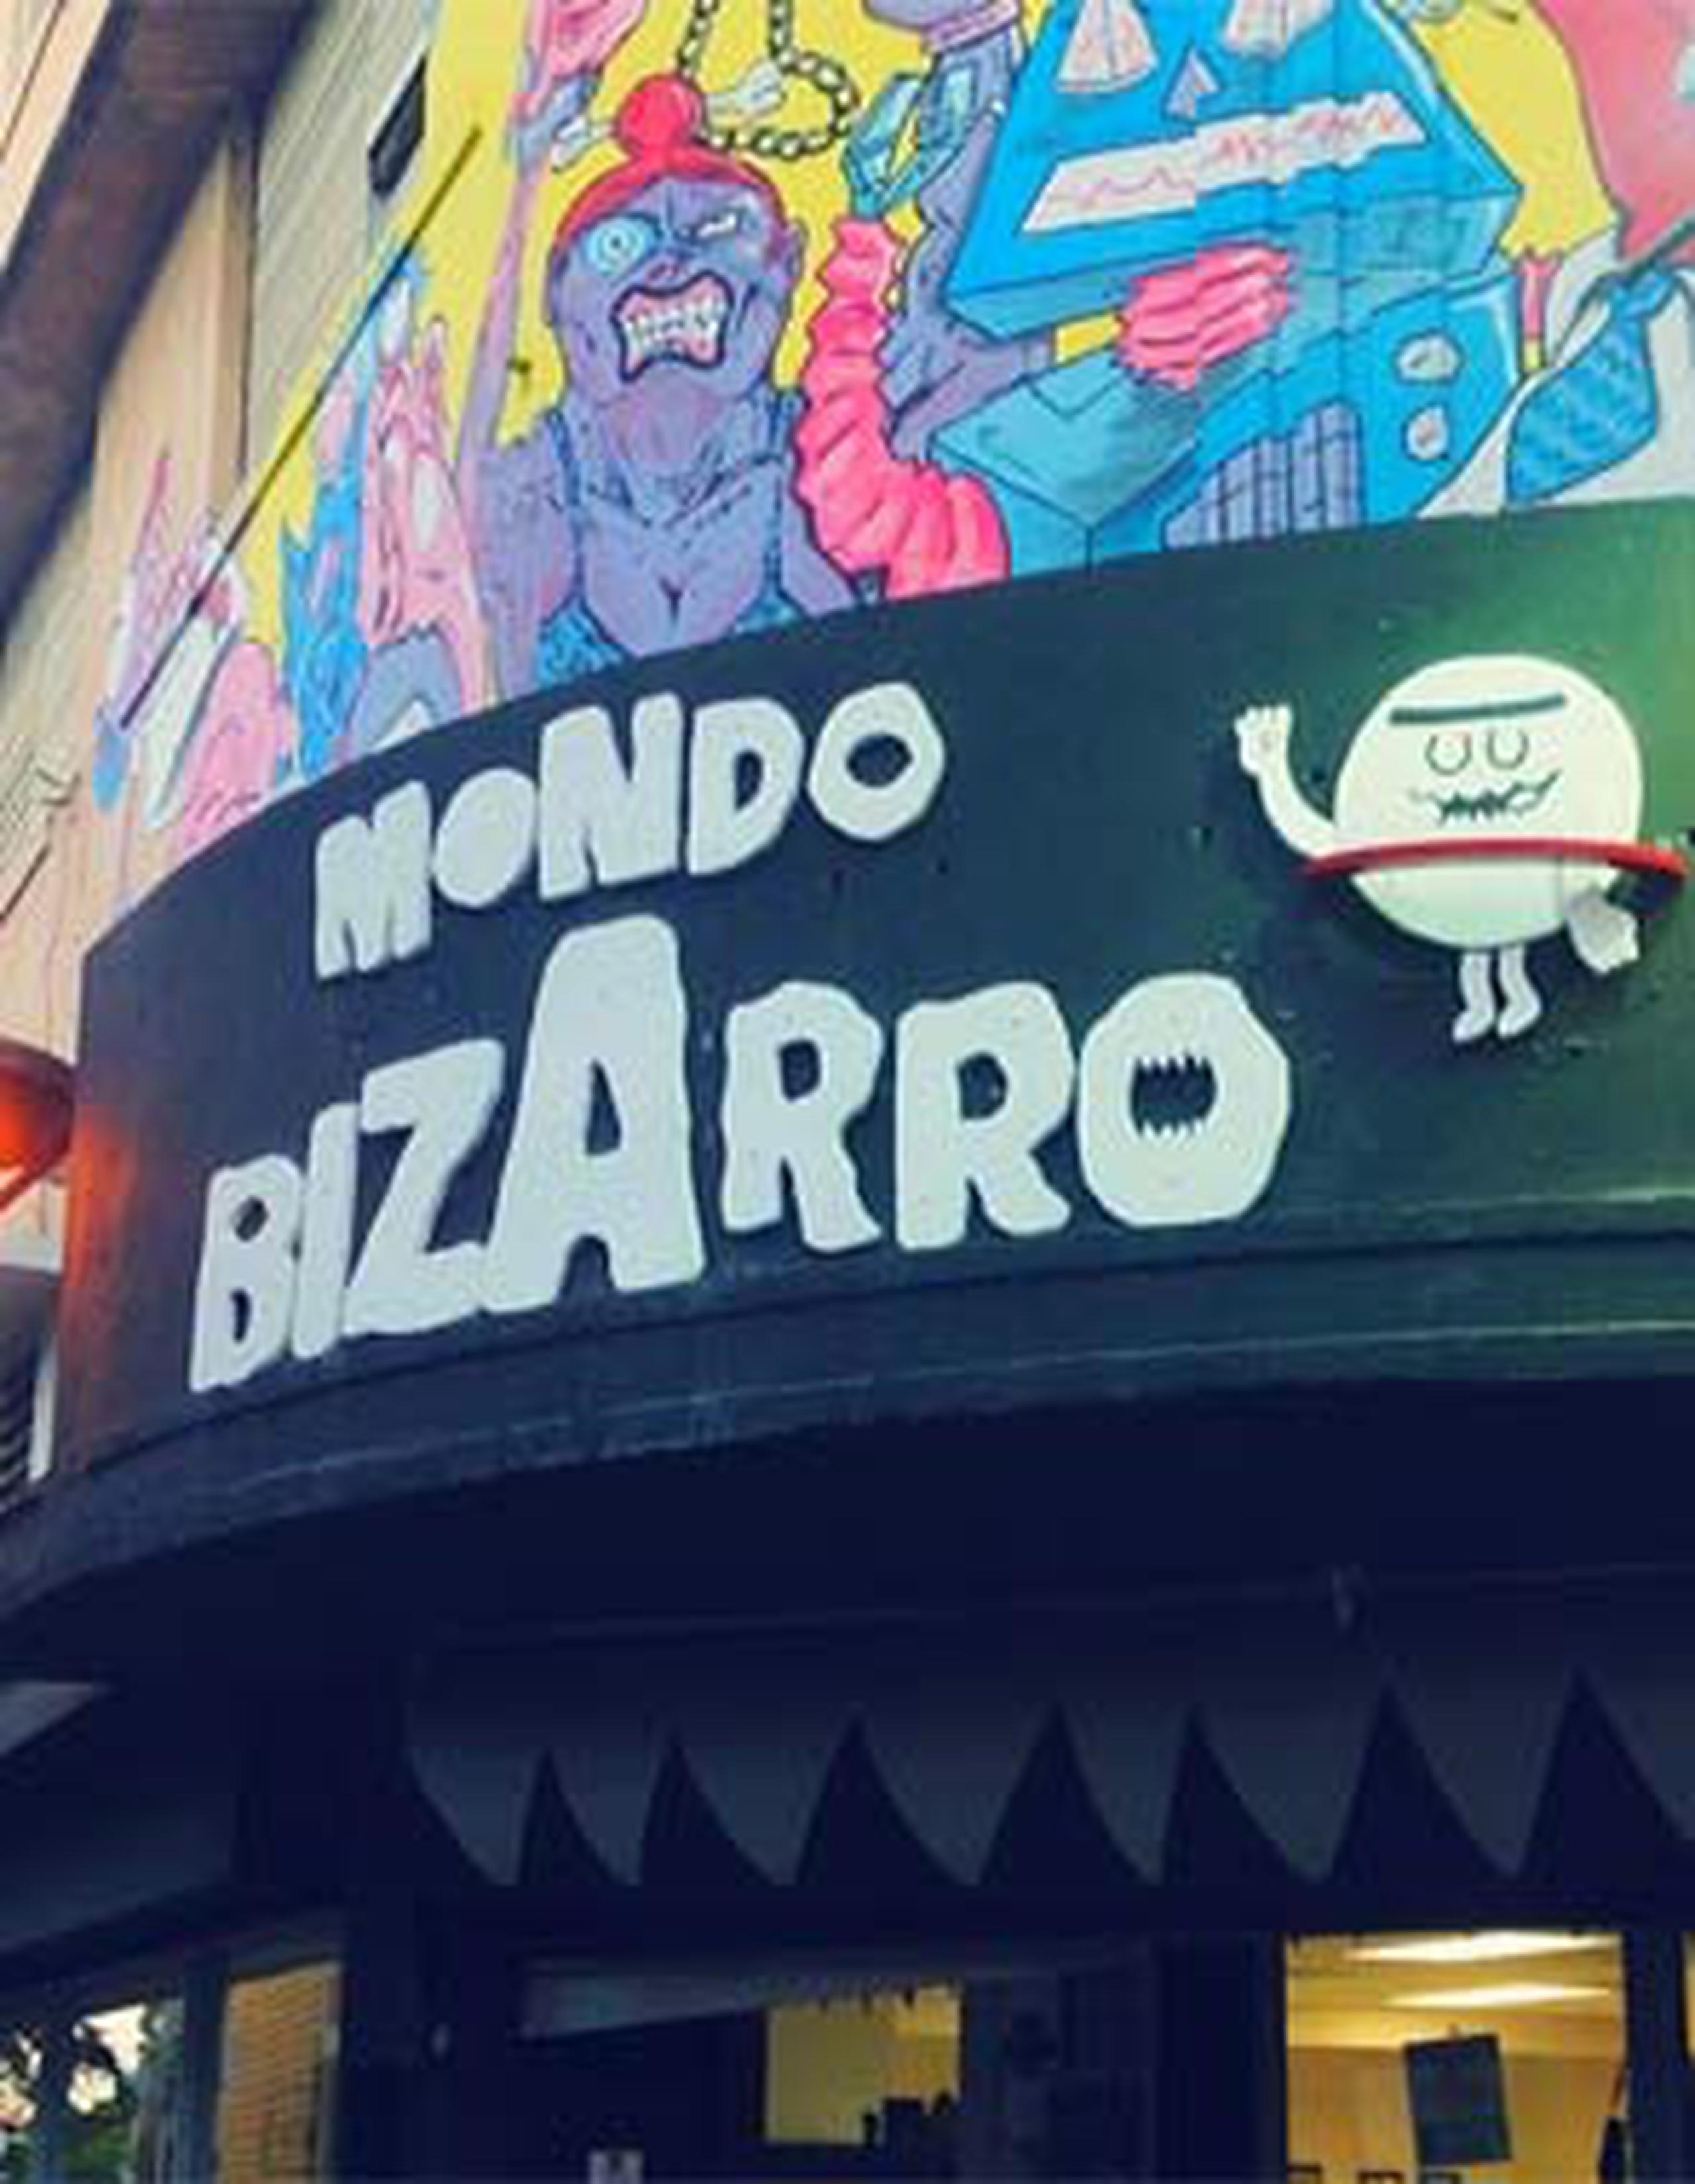 La tienda Mondo Bizarro: Arte & Cómics está ubicada en la entrada del Paseo de Diego, en la avenida Ponce de León en San Juan. (Facebook)